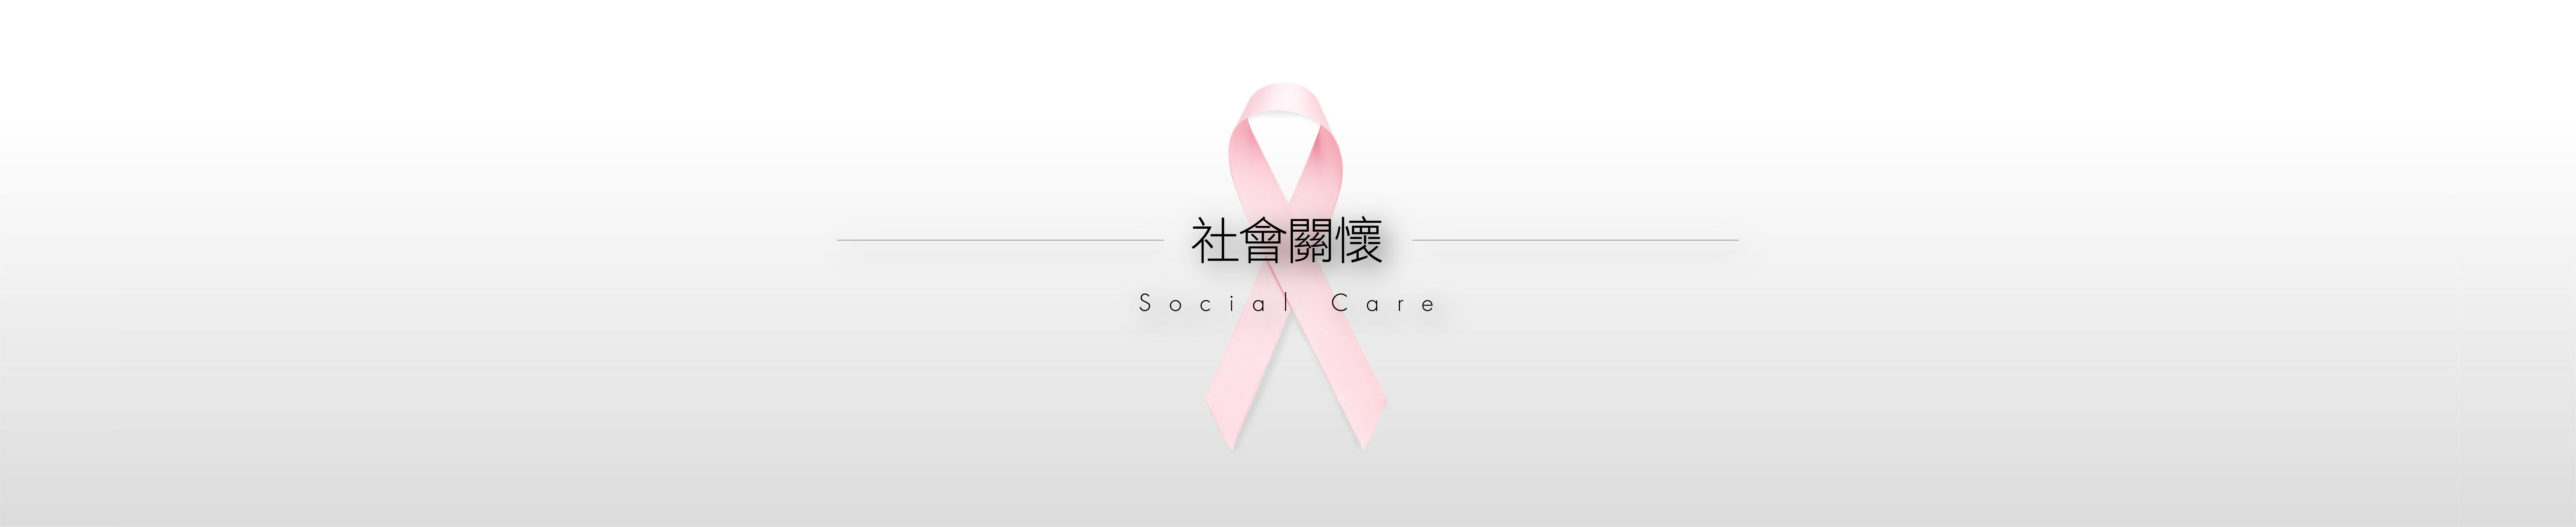 社會關懷 Social Care